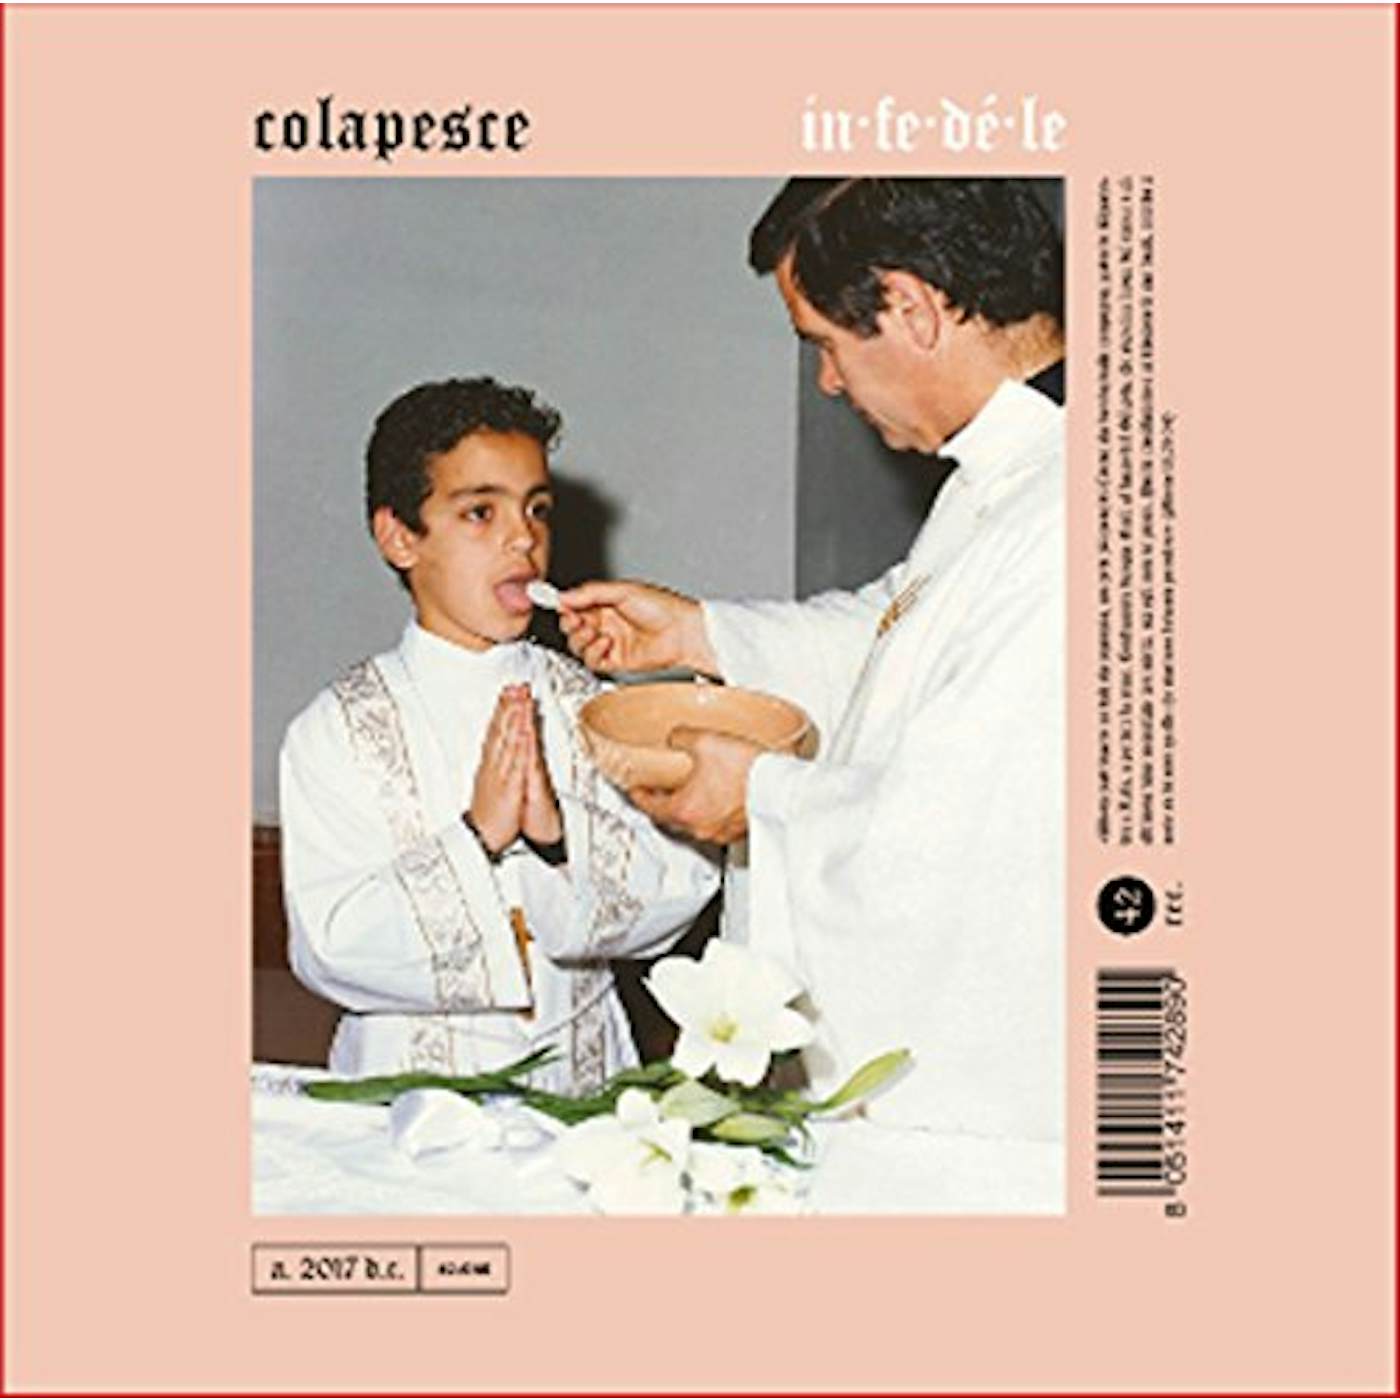 Colapesce Infedele Vinyl Record